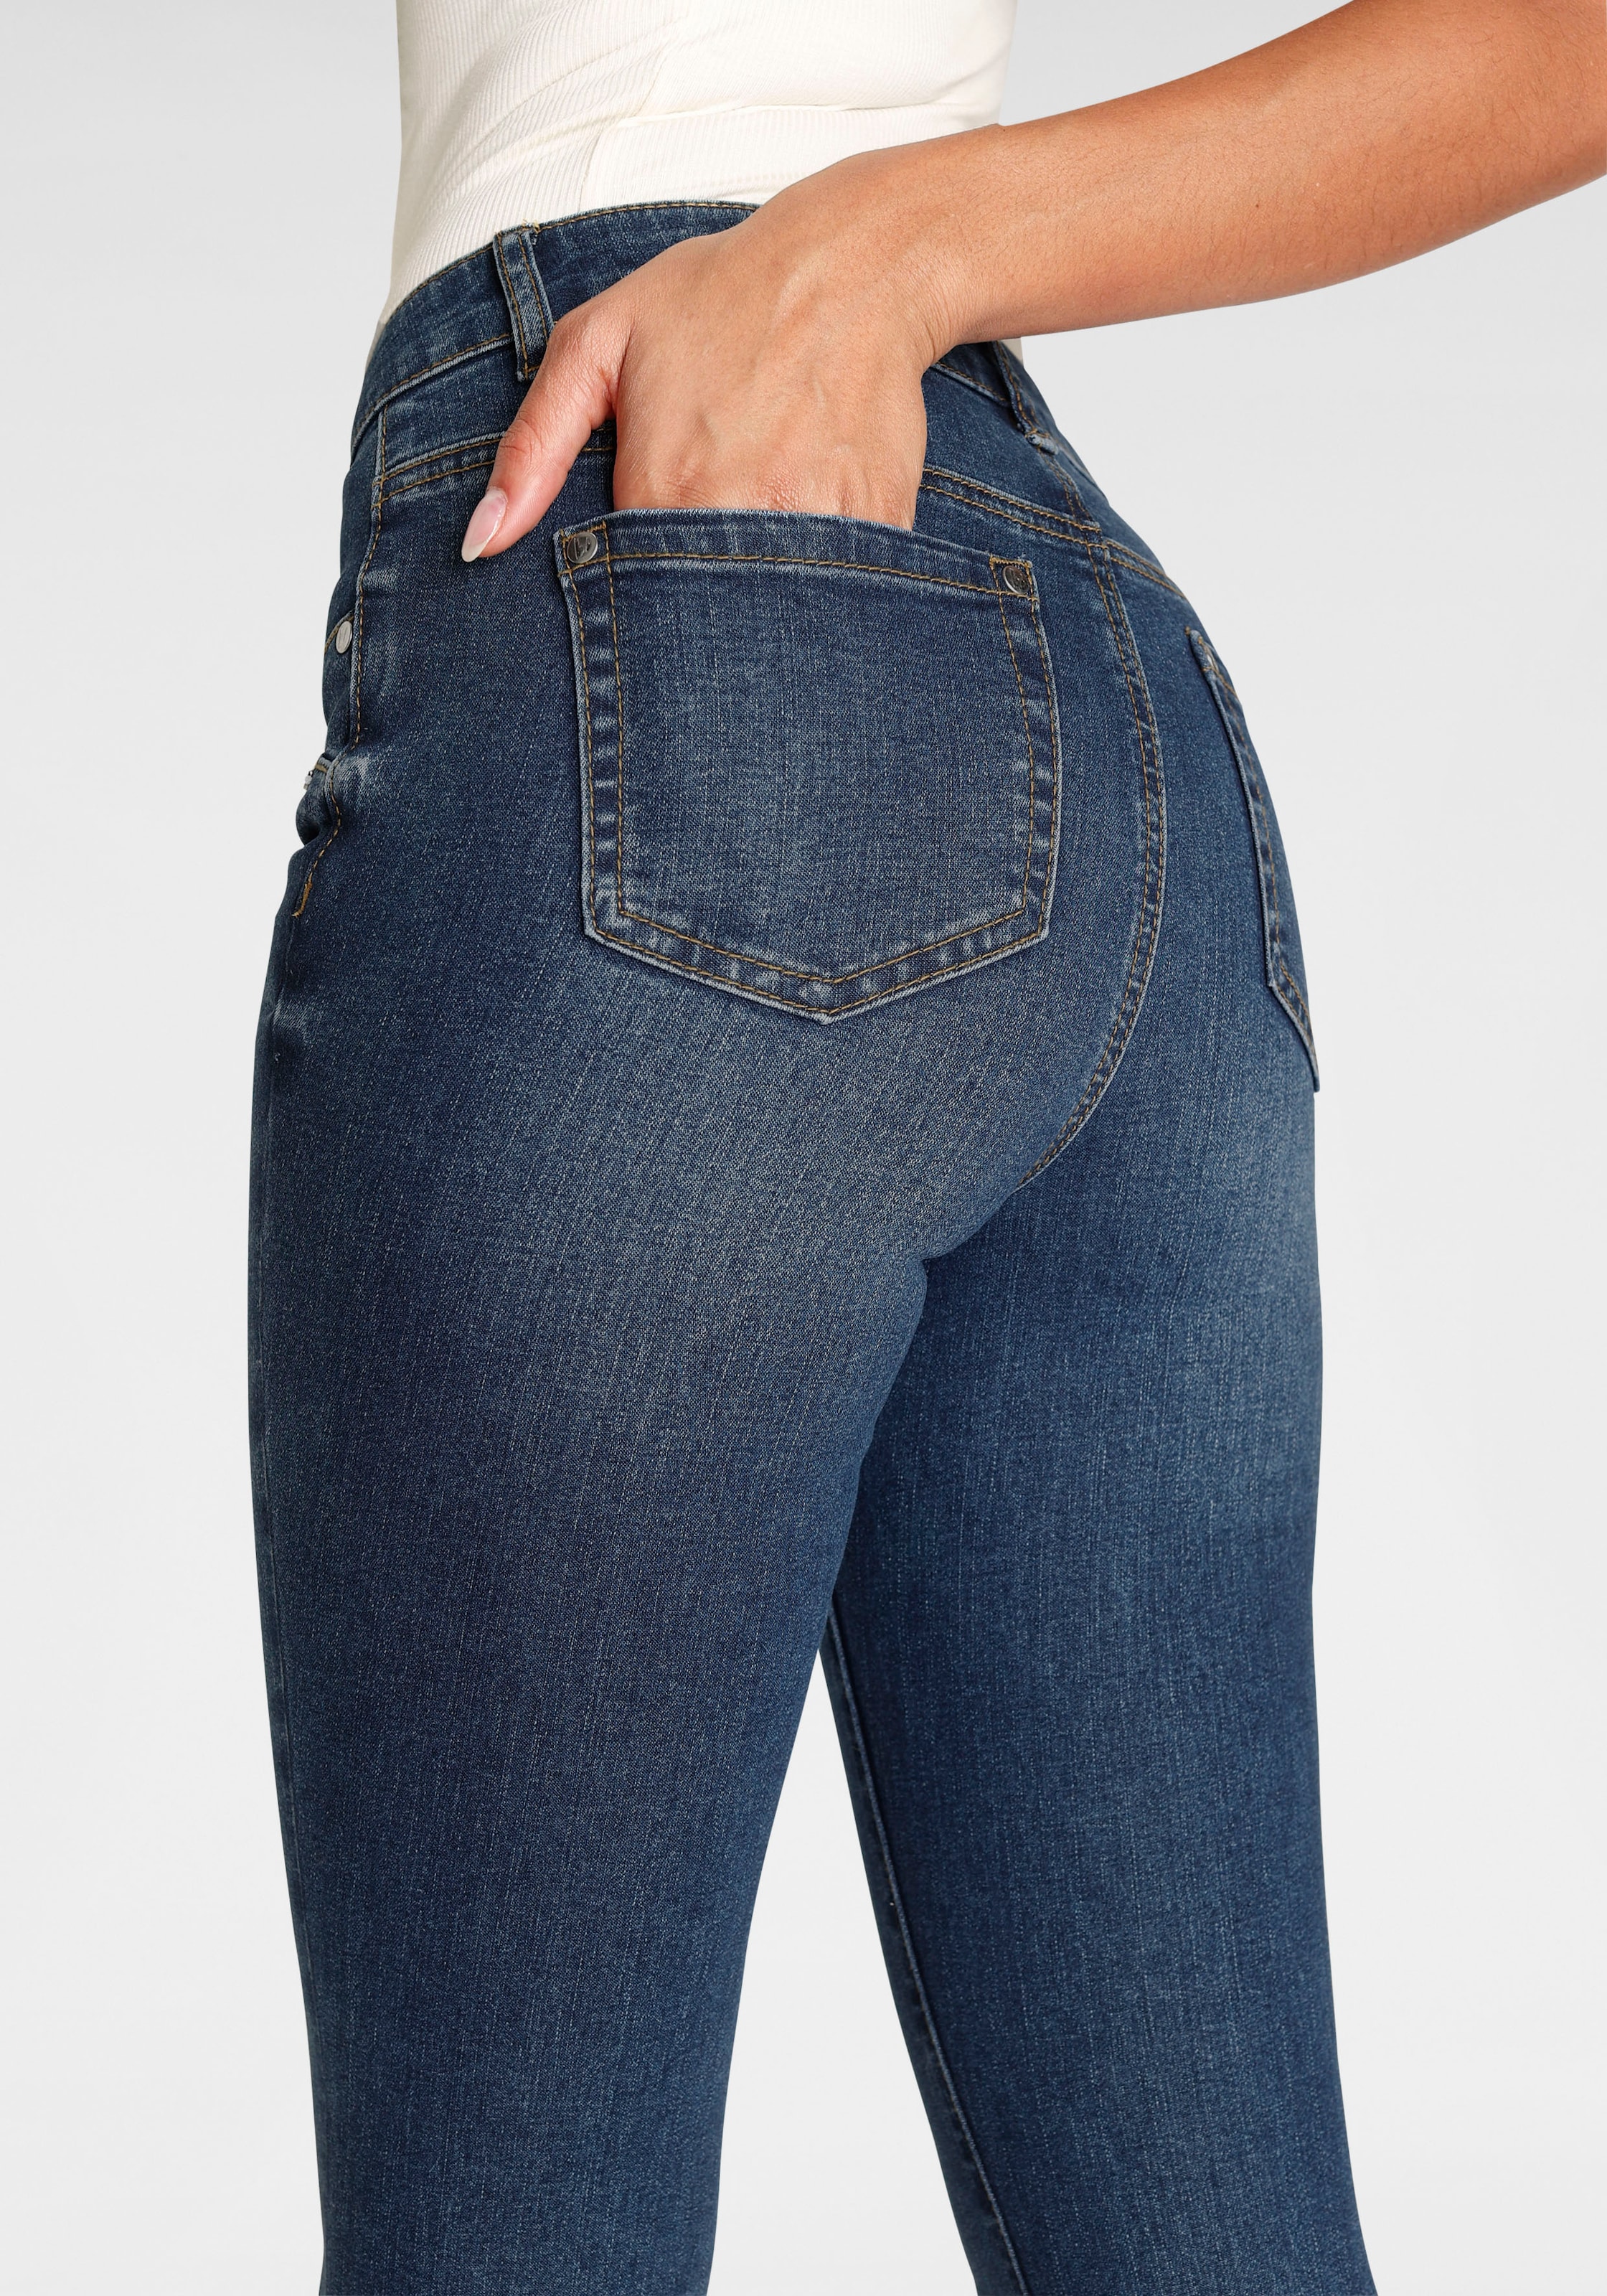 Bruno Banani 5-Pocket-Jeans, mit offenem für Saum | NEUE kaufen BAUR KOLLEKTION